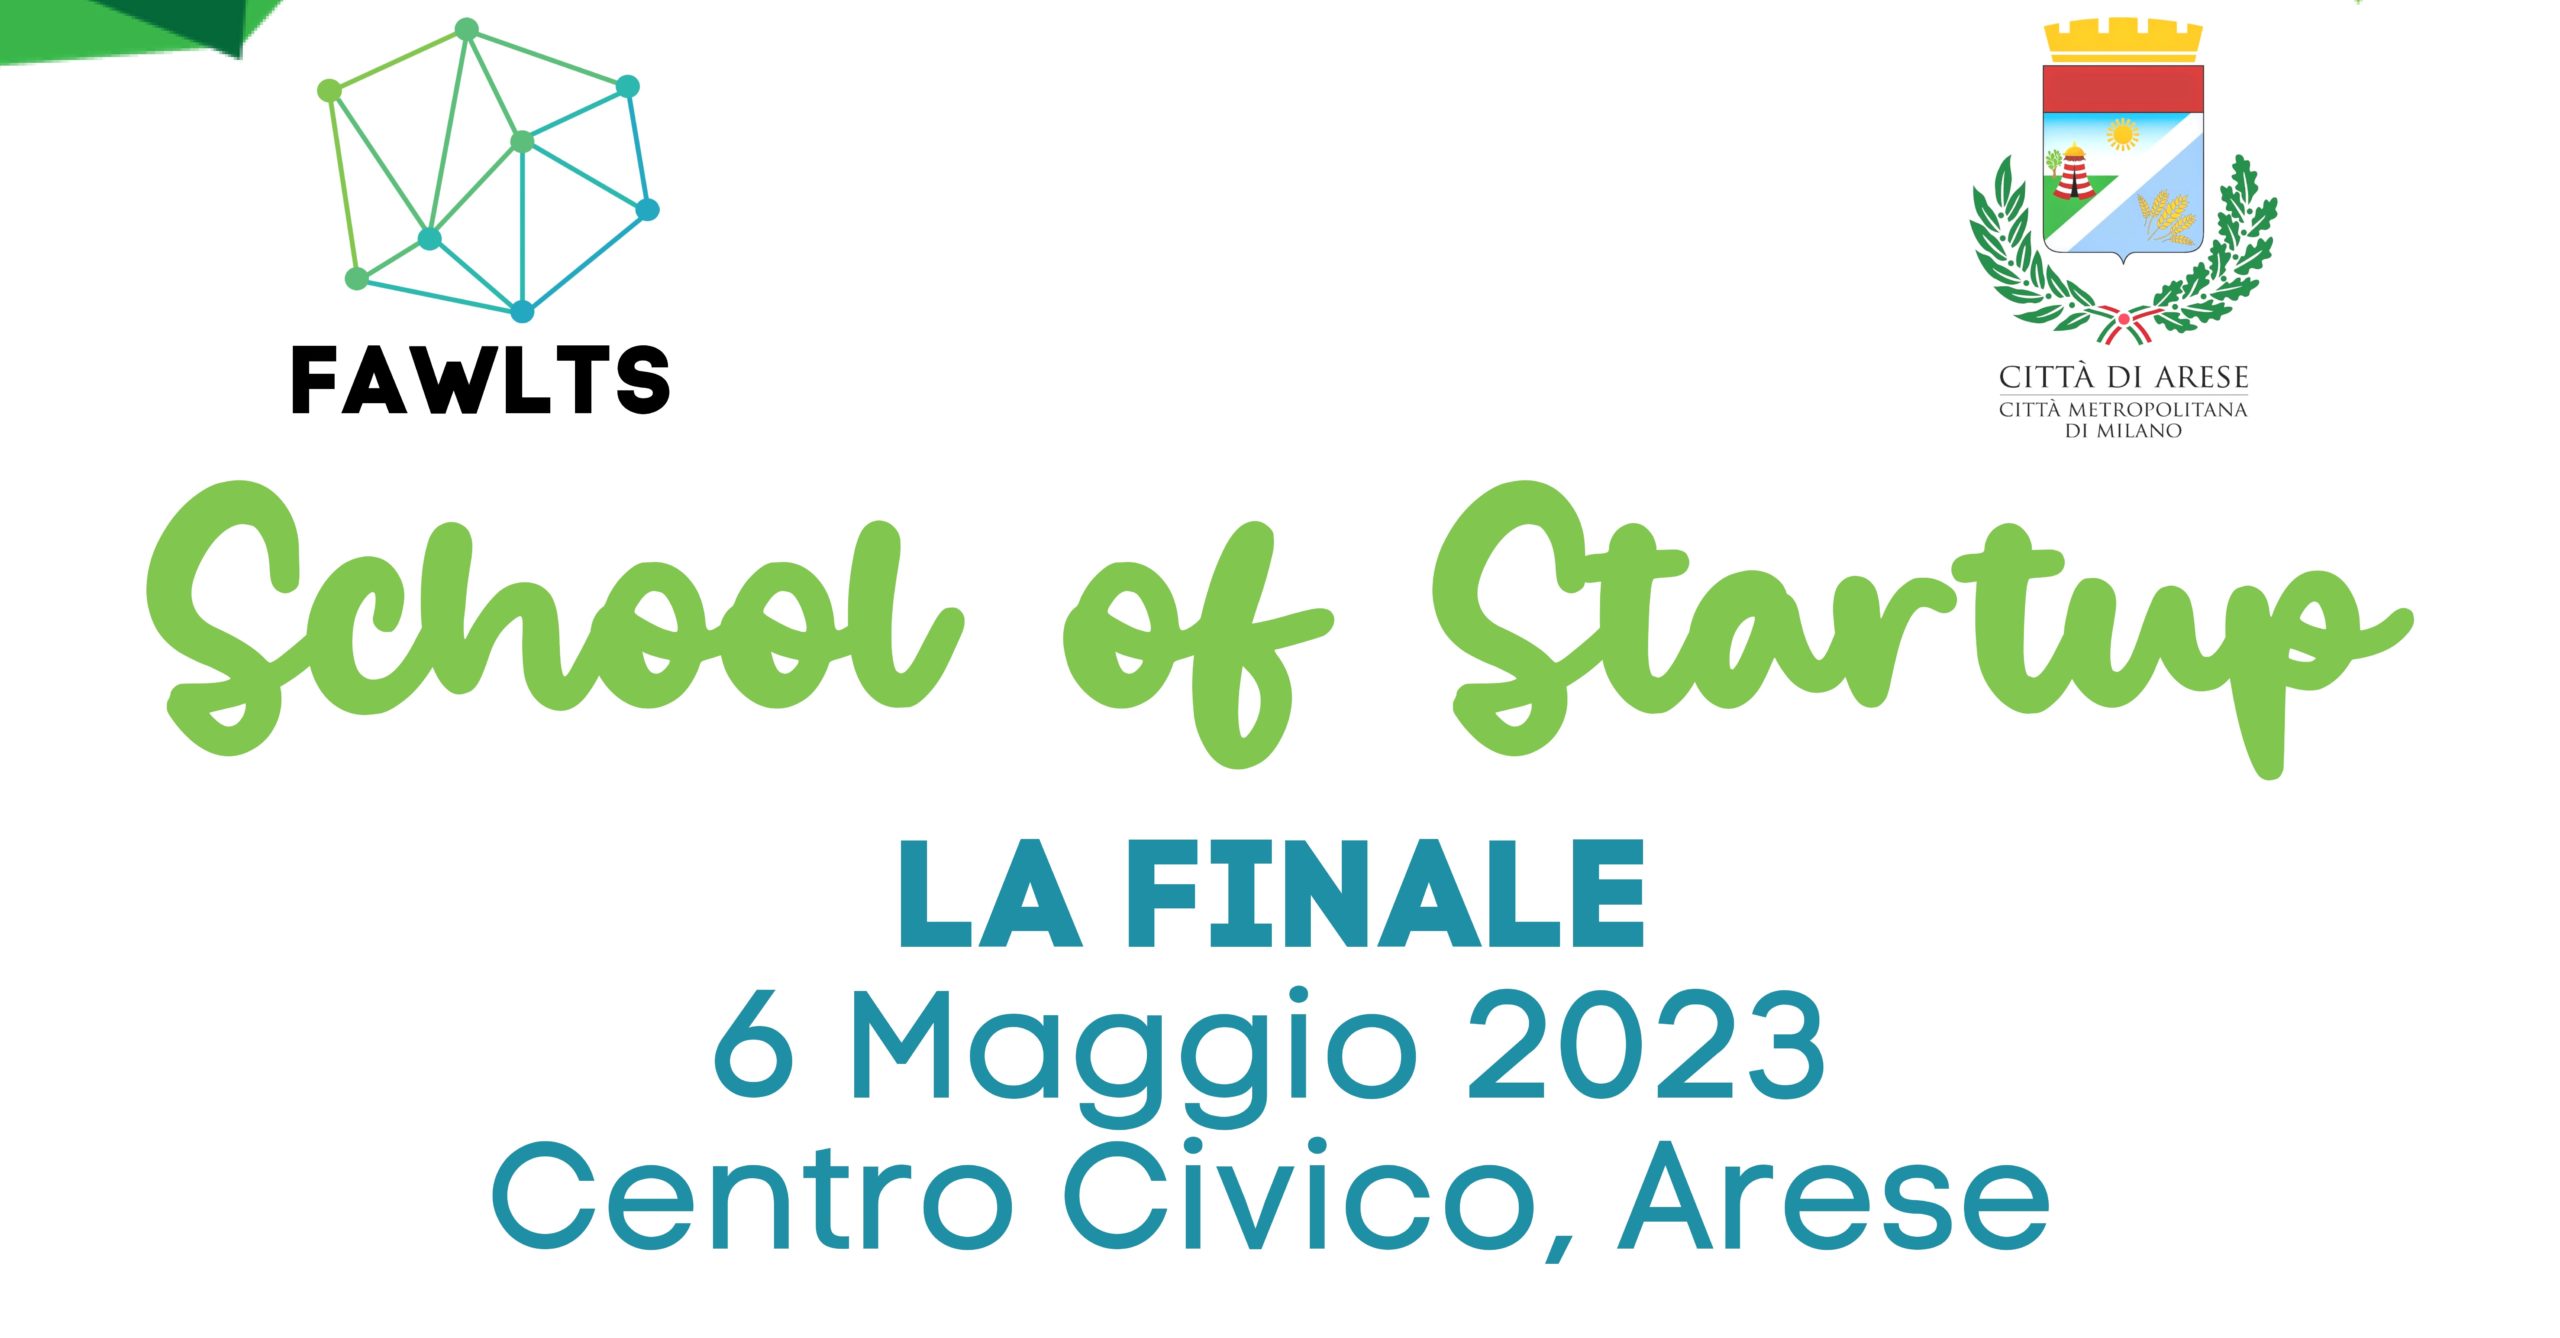 School of Startup : La finale